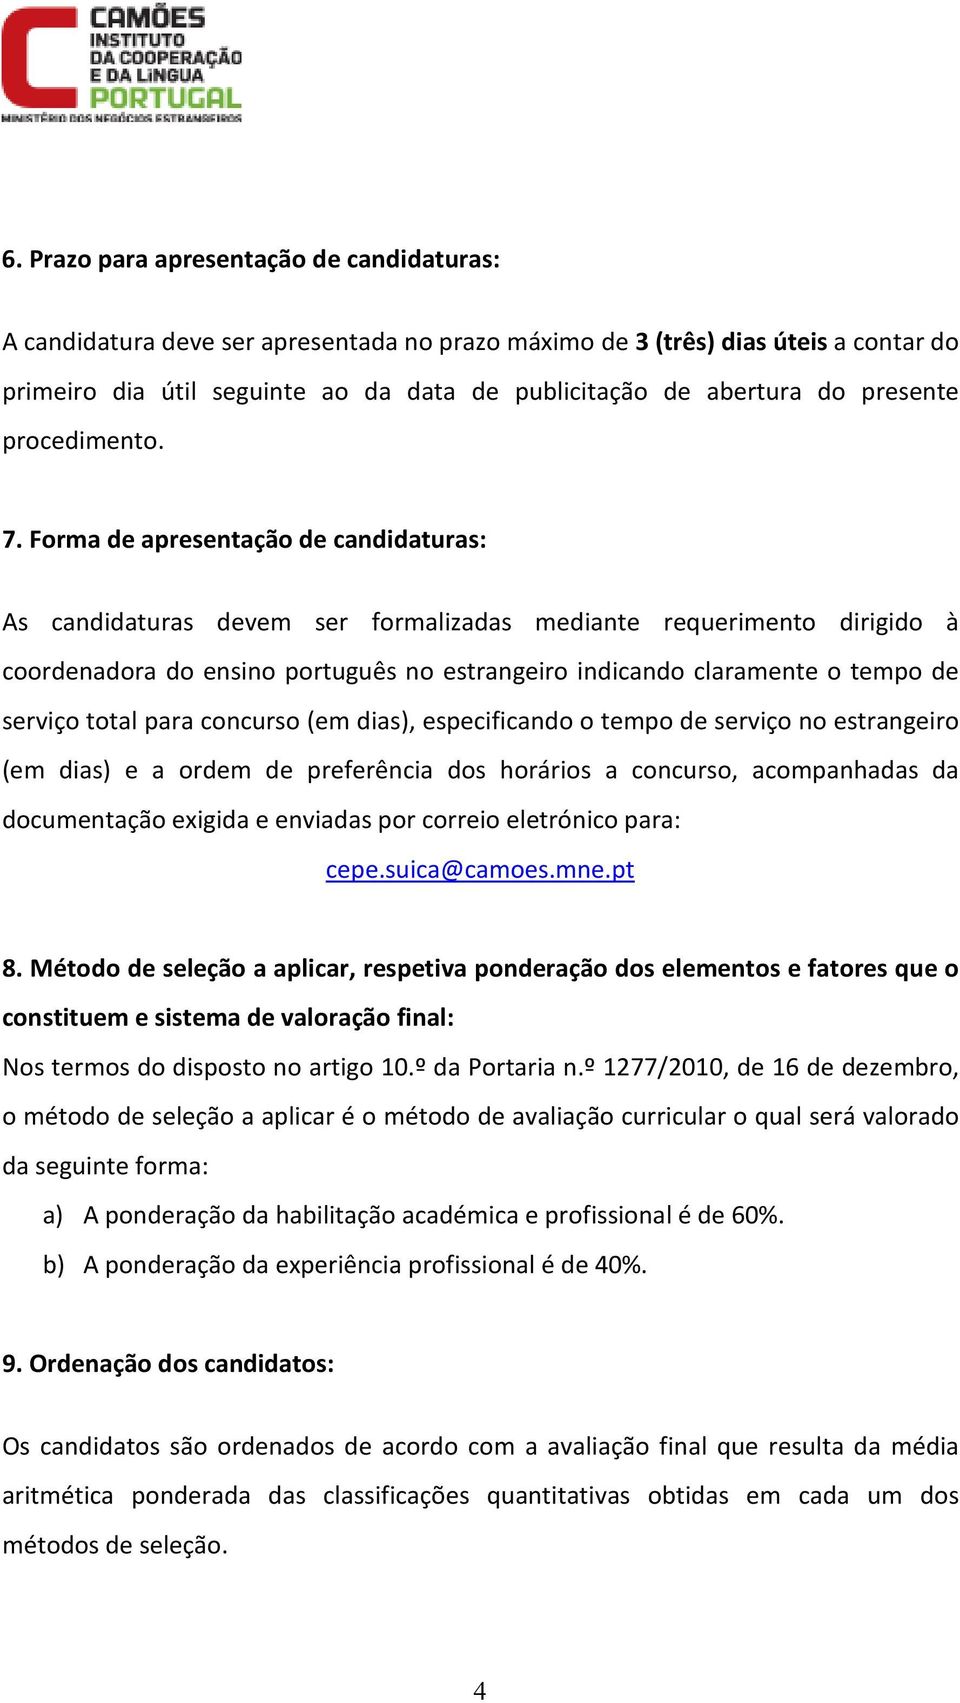 Forma de apresentação de candidaturas: As candidaturas devem ser formalizadas mediante requerimento dirigido à coordenadora do ensino português no estrangeiro indicando claramente o tempo de serviço